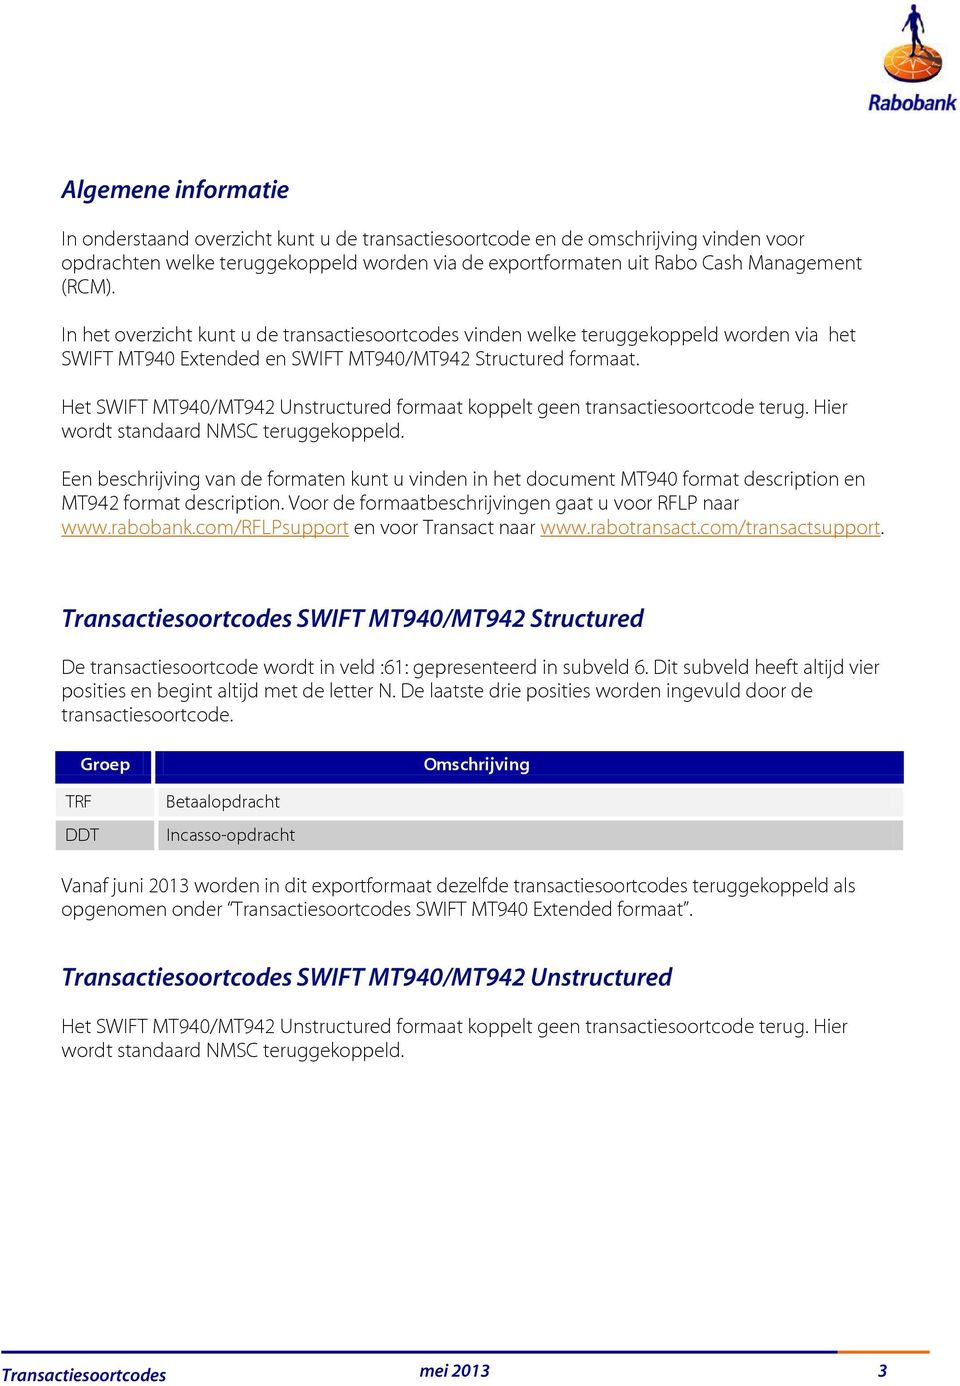 Het SWIFT MT940/MT942 Unstructured formaat koppelt geen transactiesoortcode terug. Hier wordt standaard NMSC teruggekoppeld.